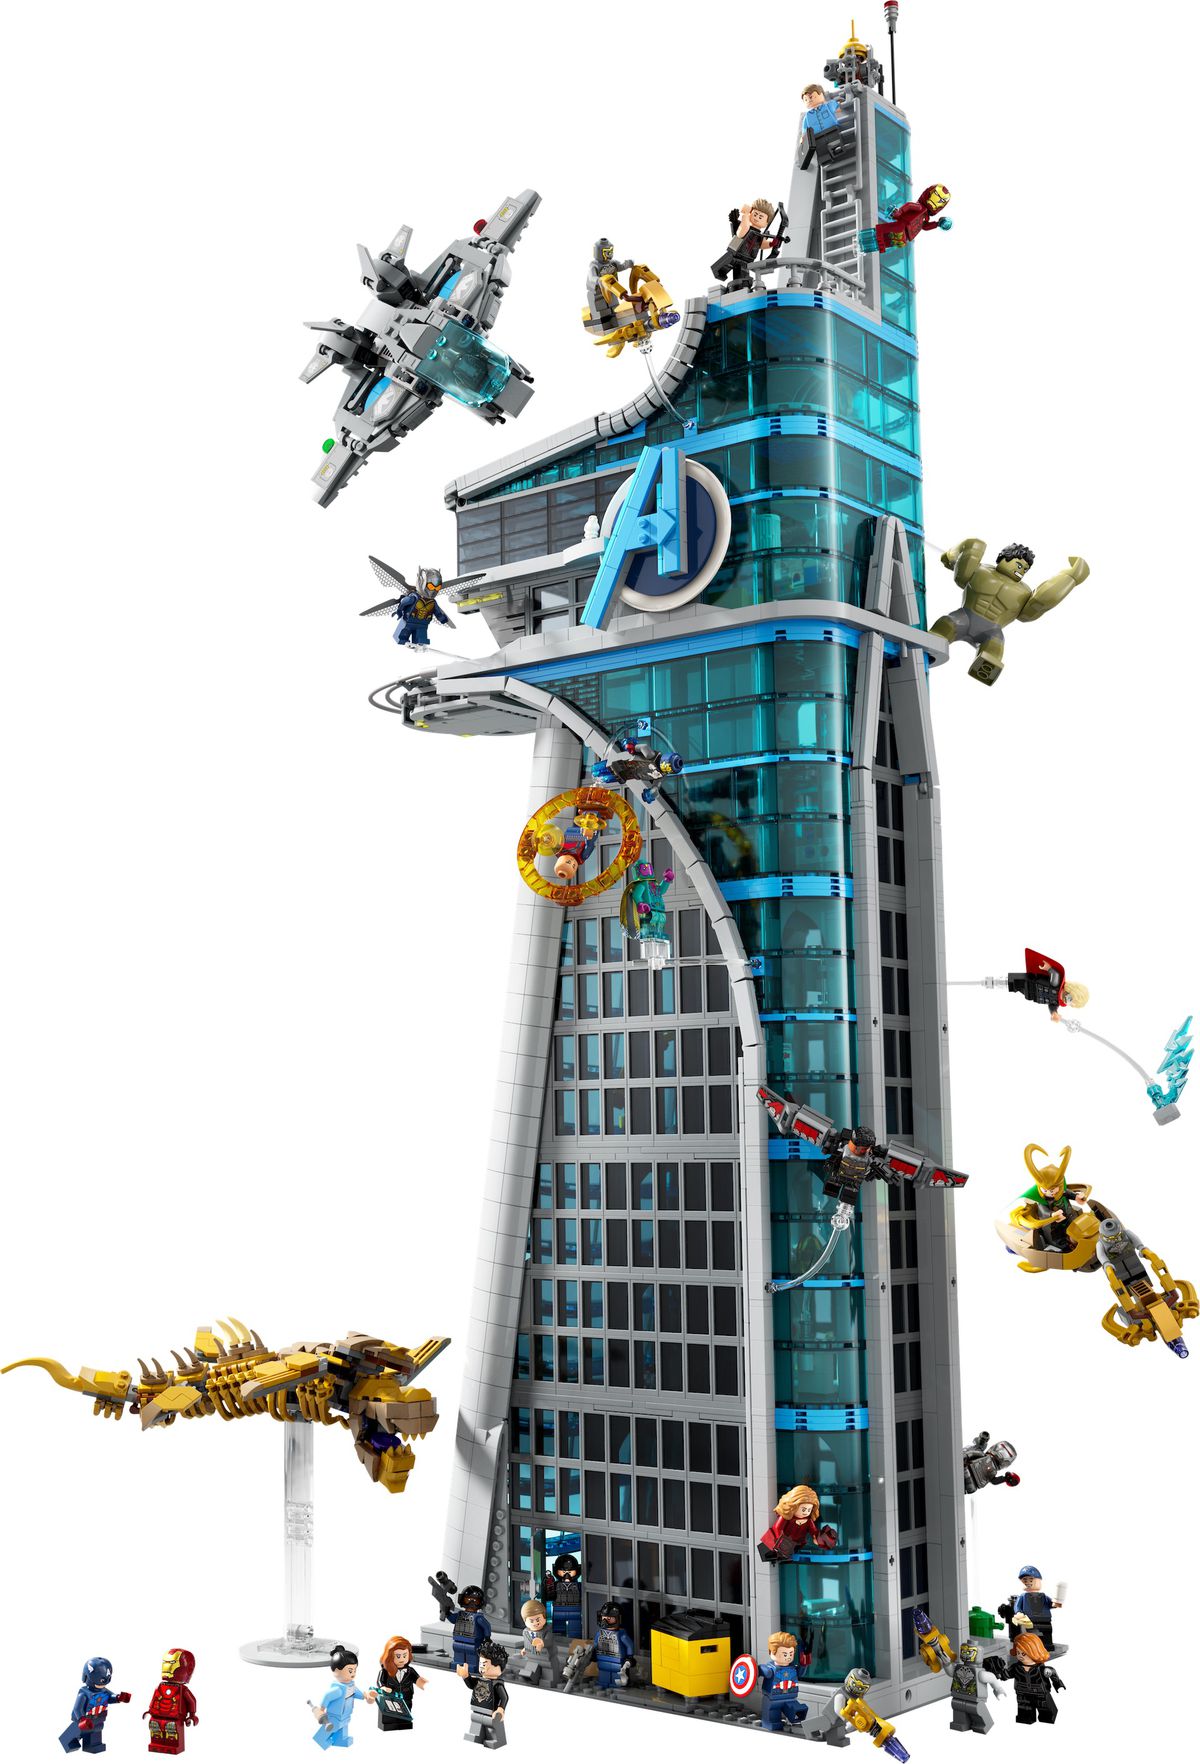 لقطة منتج لبرج Lego Avengers، تُظهر قوات Avengers و Chitauri المختلفة تتقاتل في الخارج